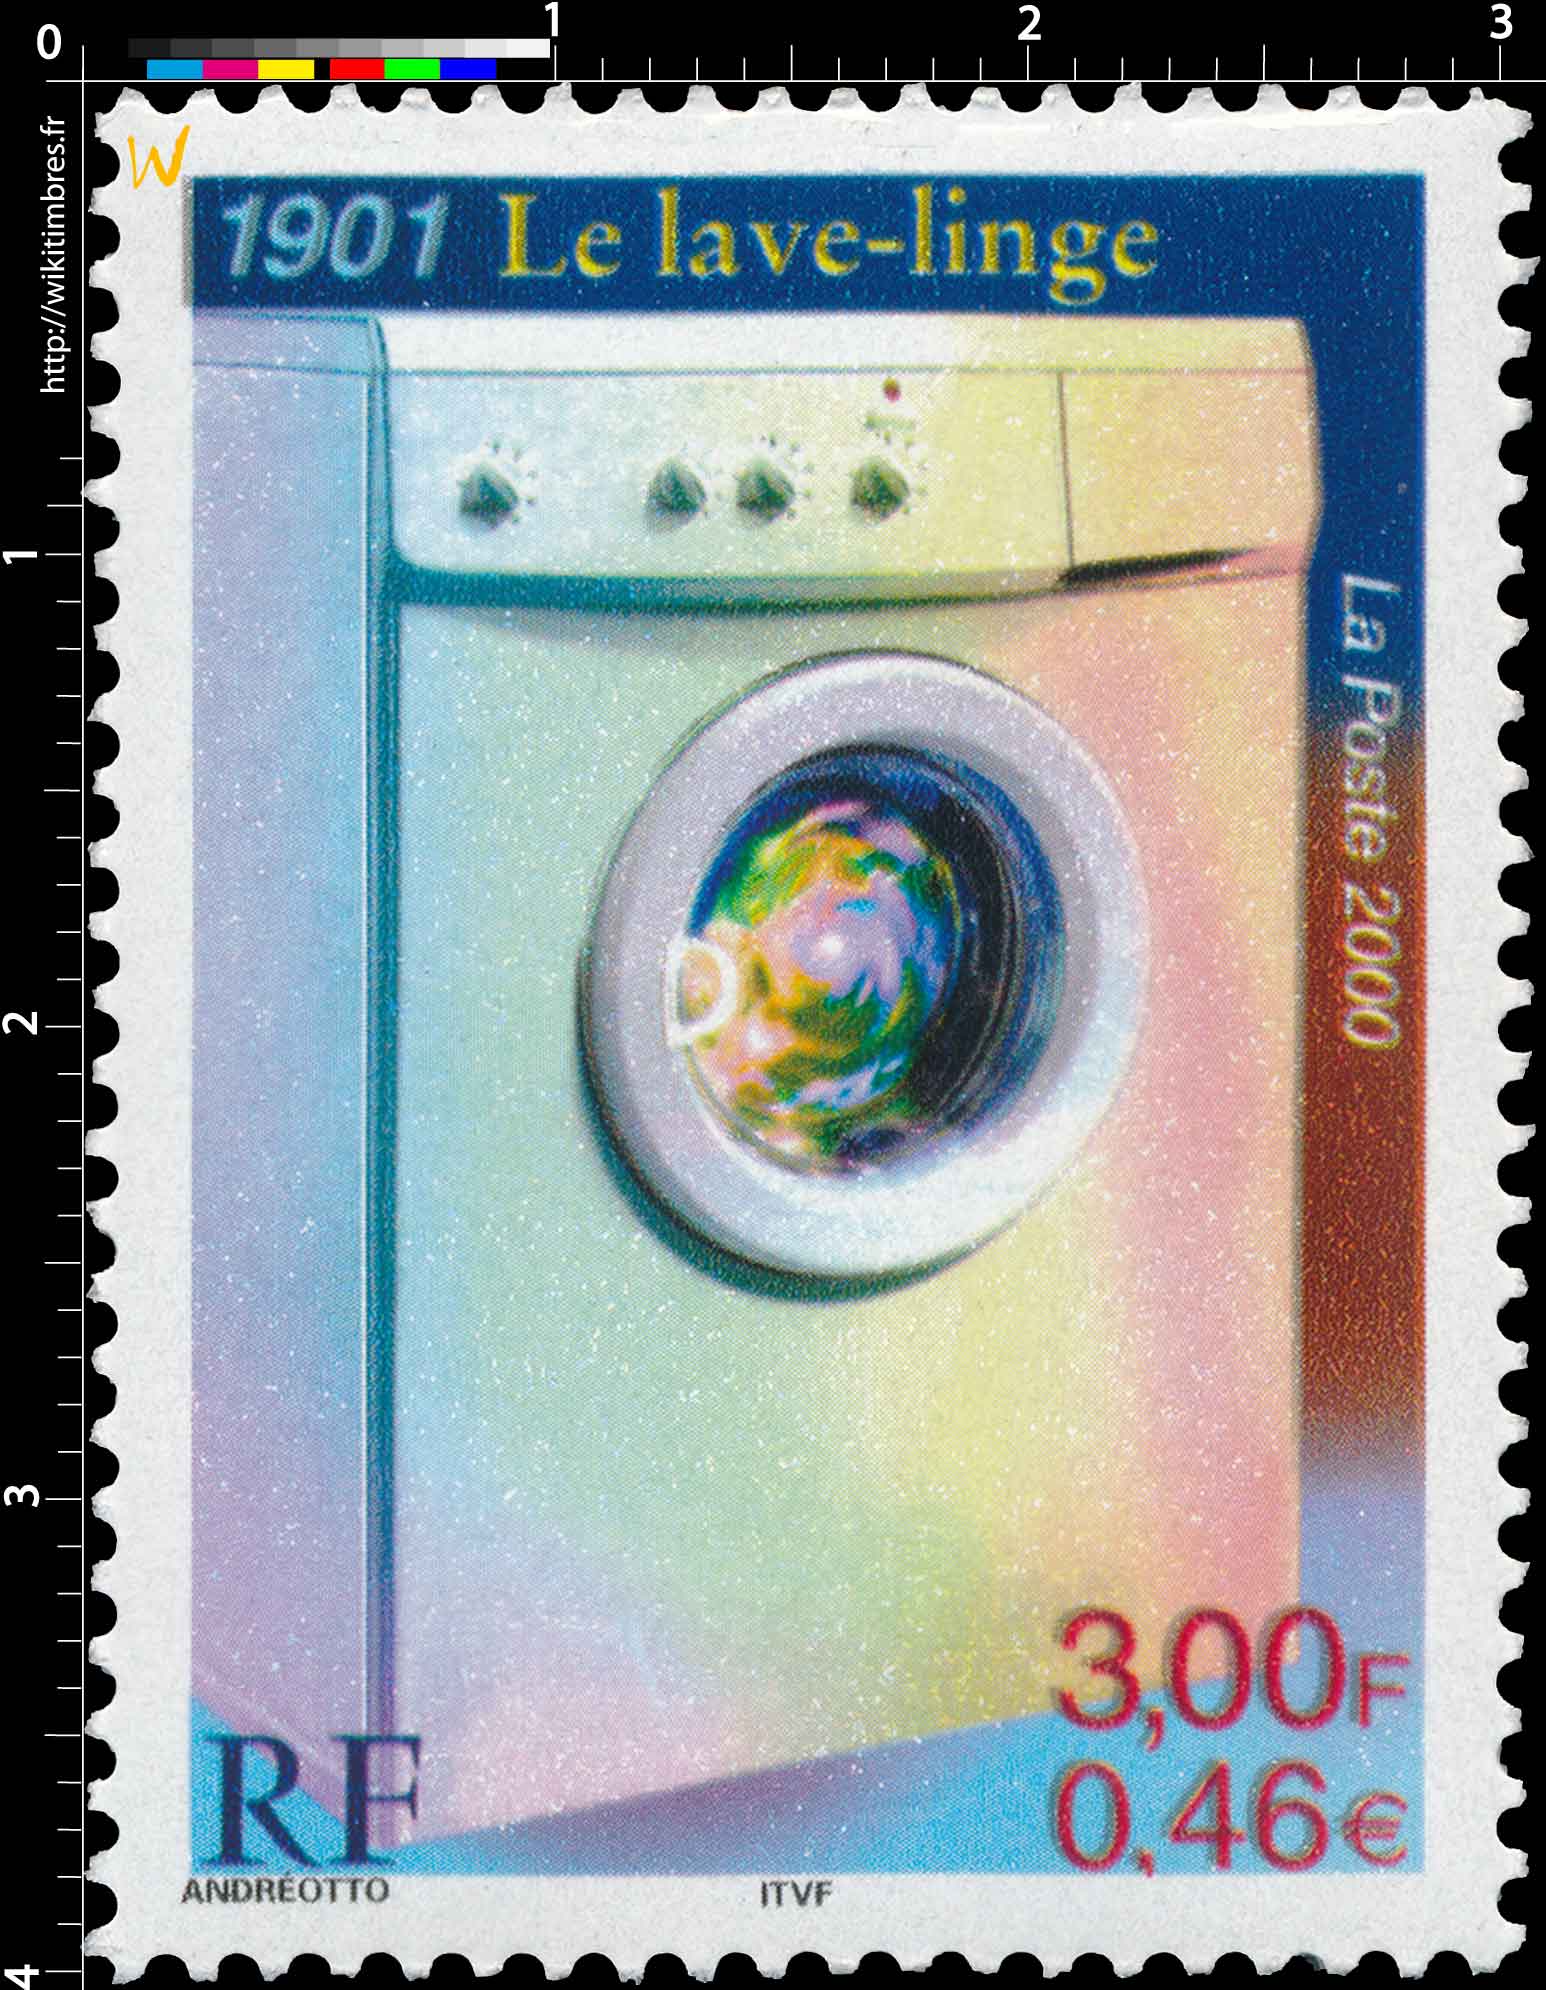 2000 1901 Le lave-linge